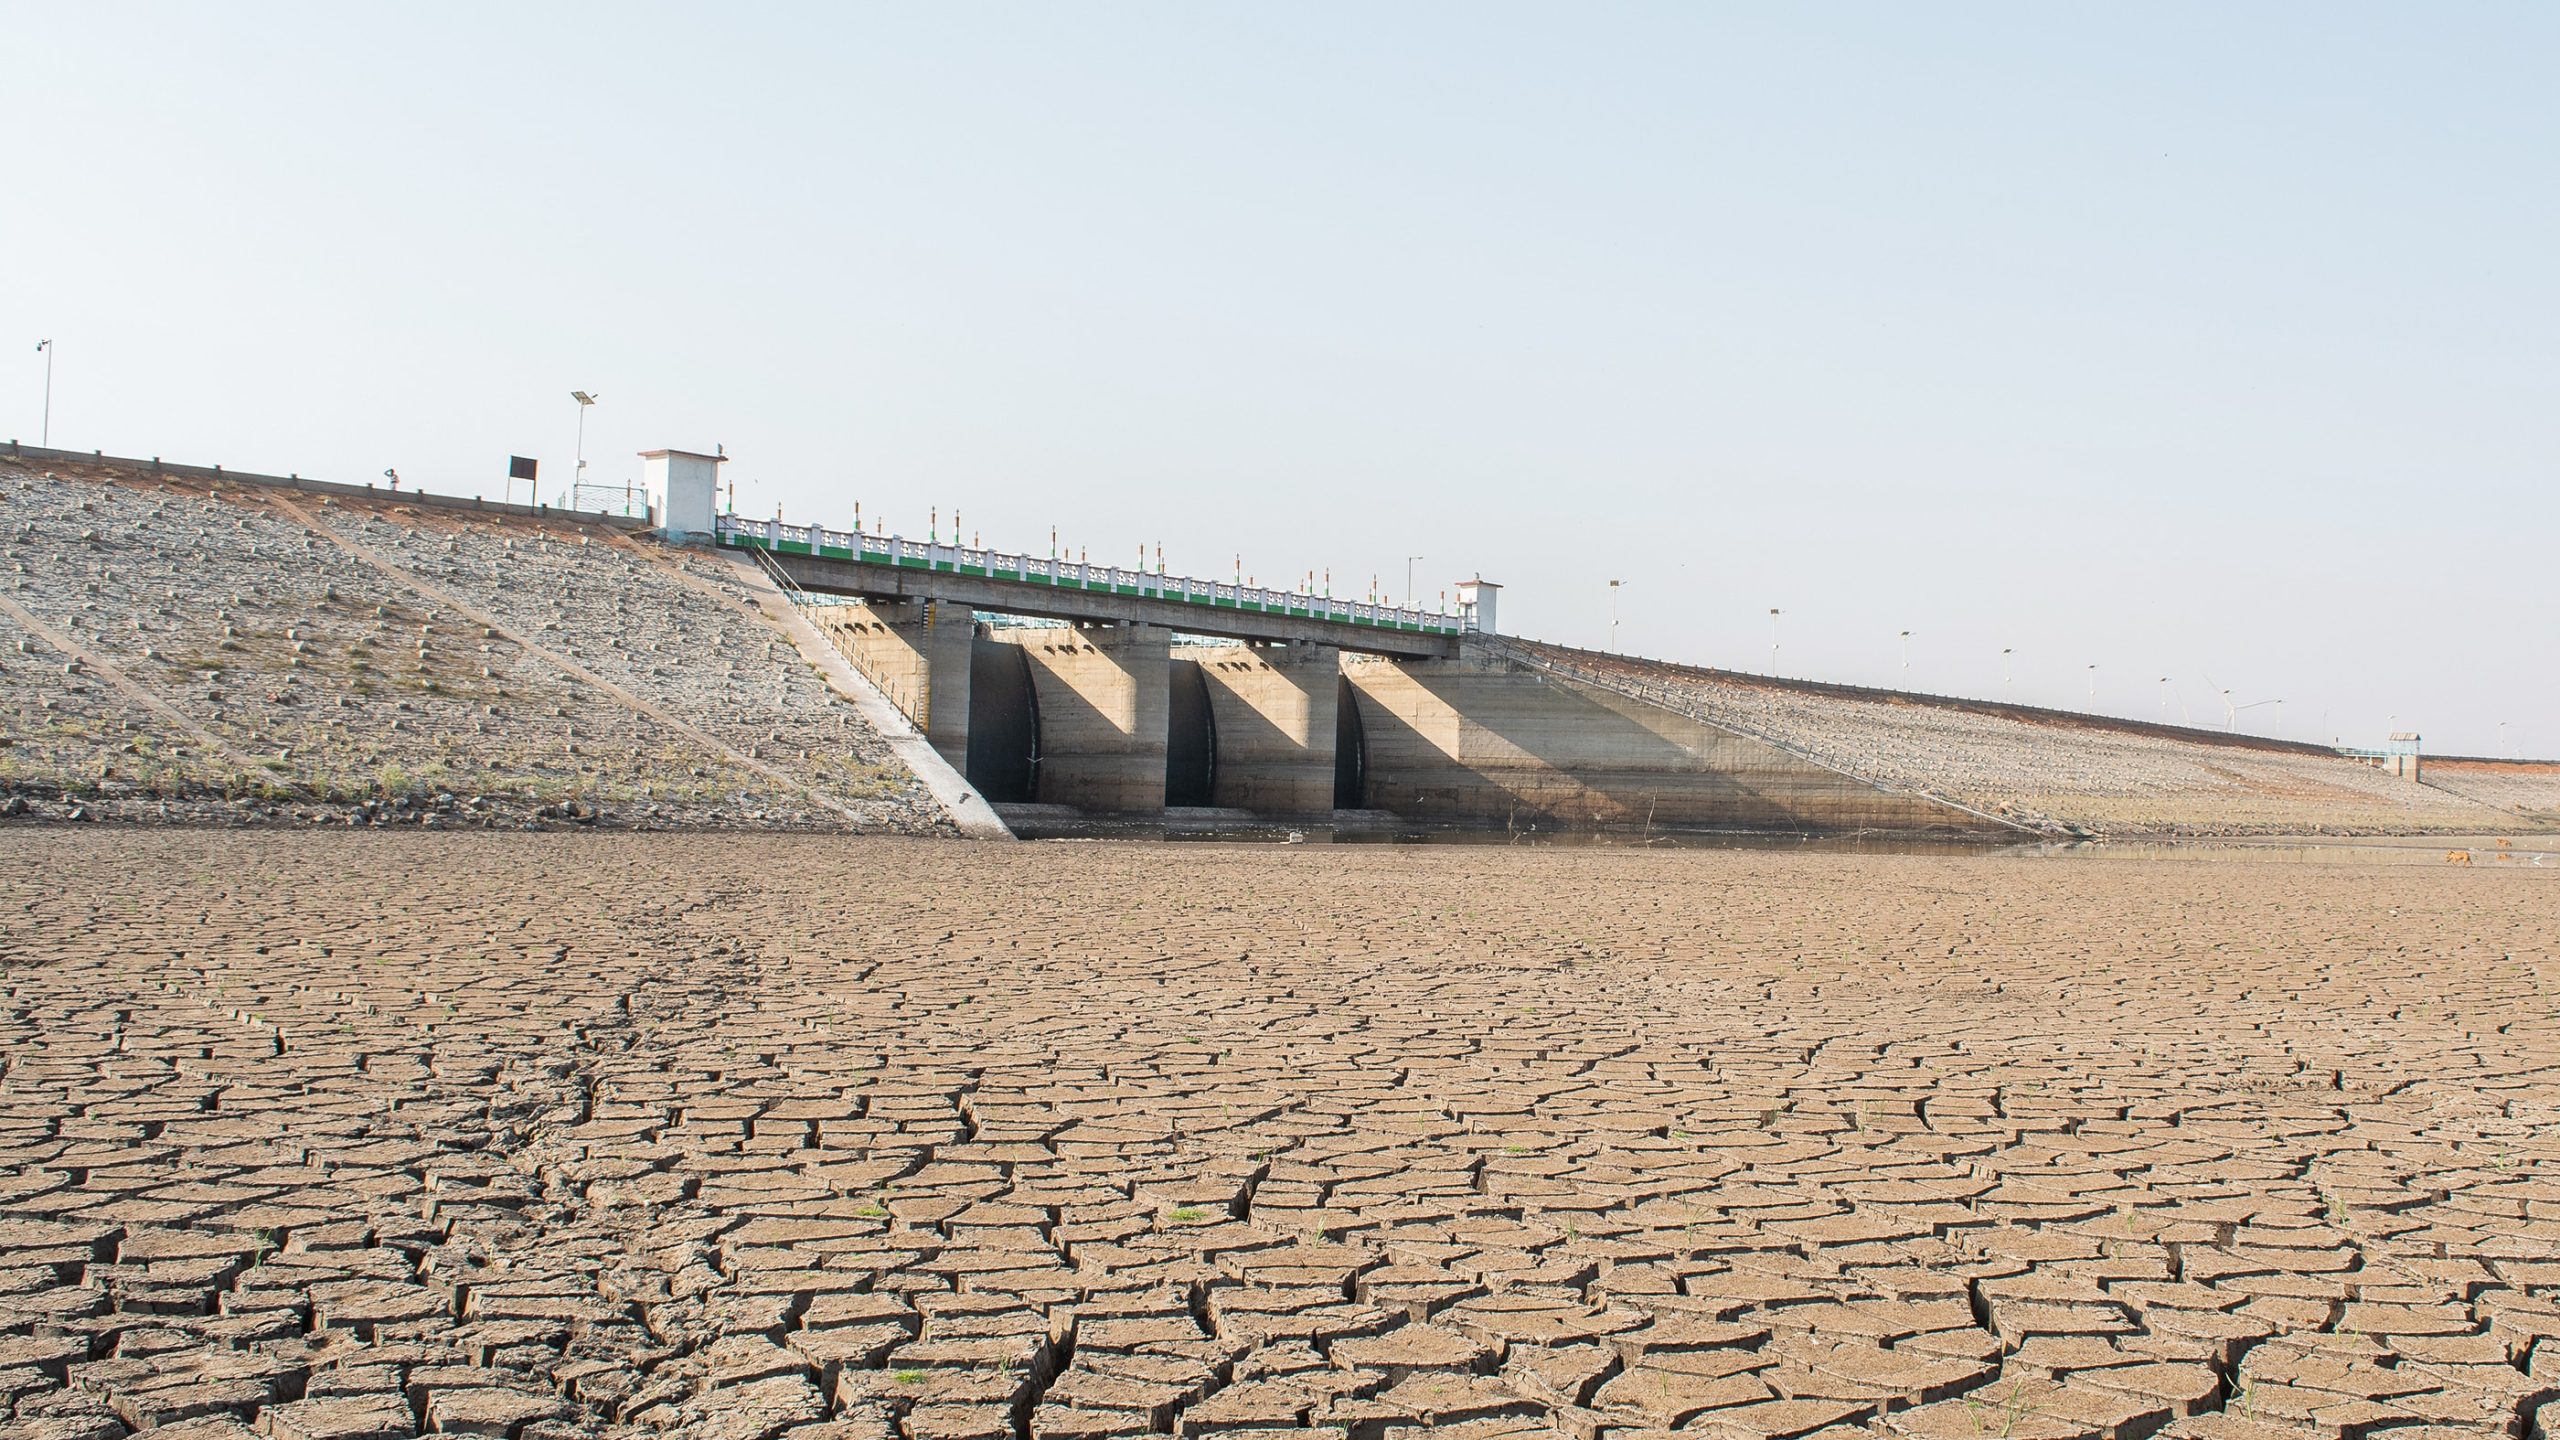 Rising temperatures cause drought